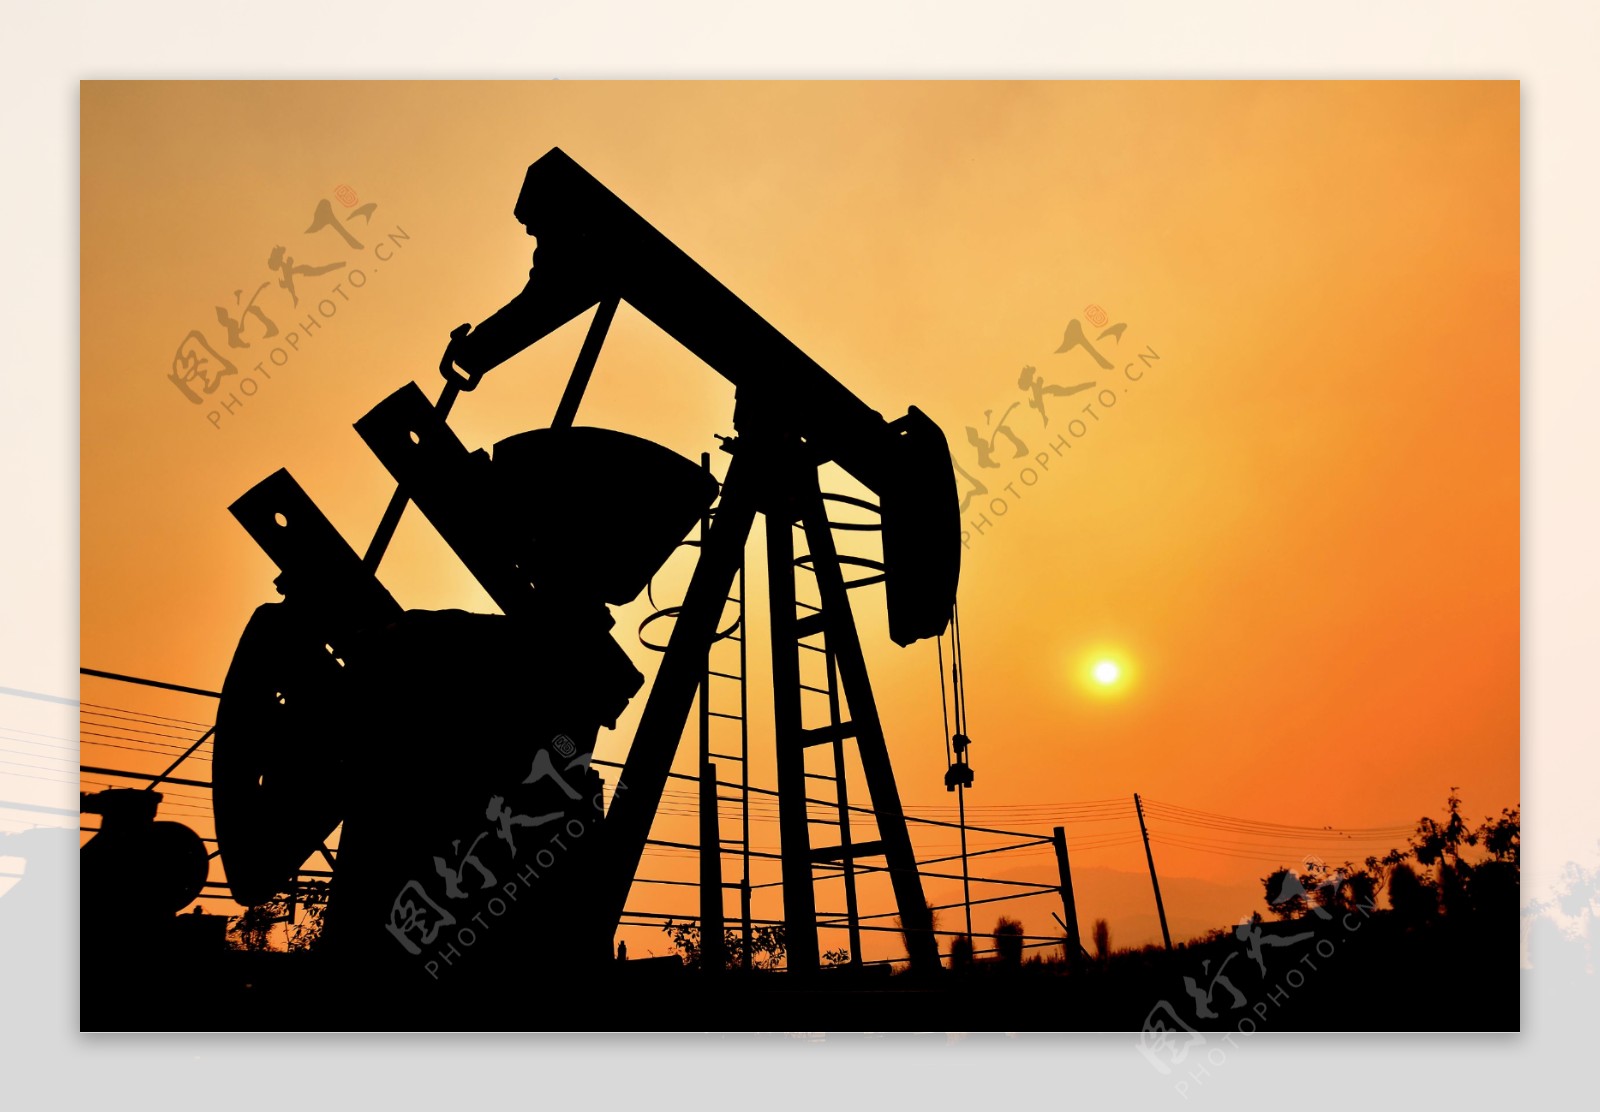 钻井油田石油油井图片